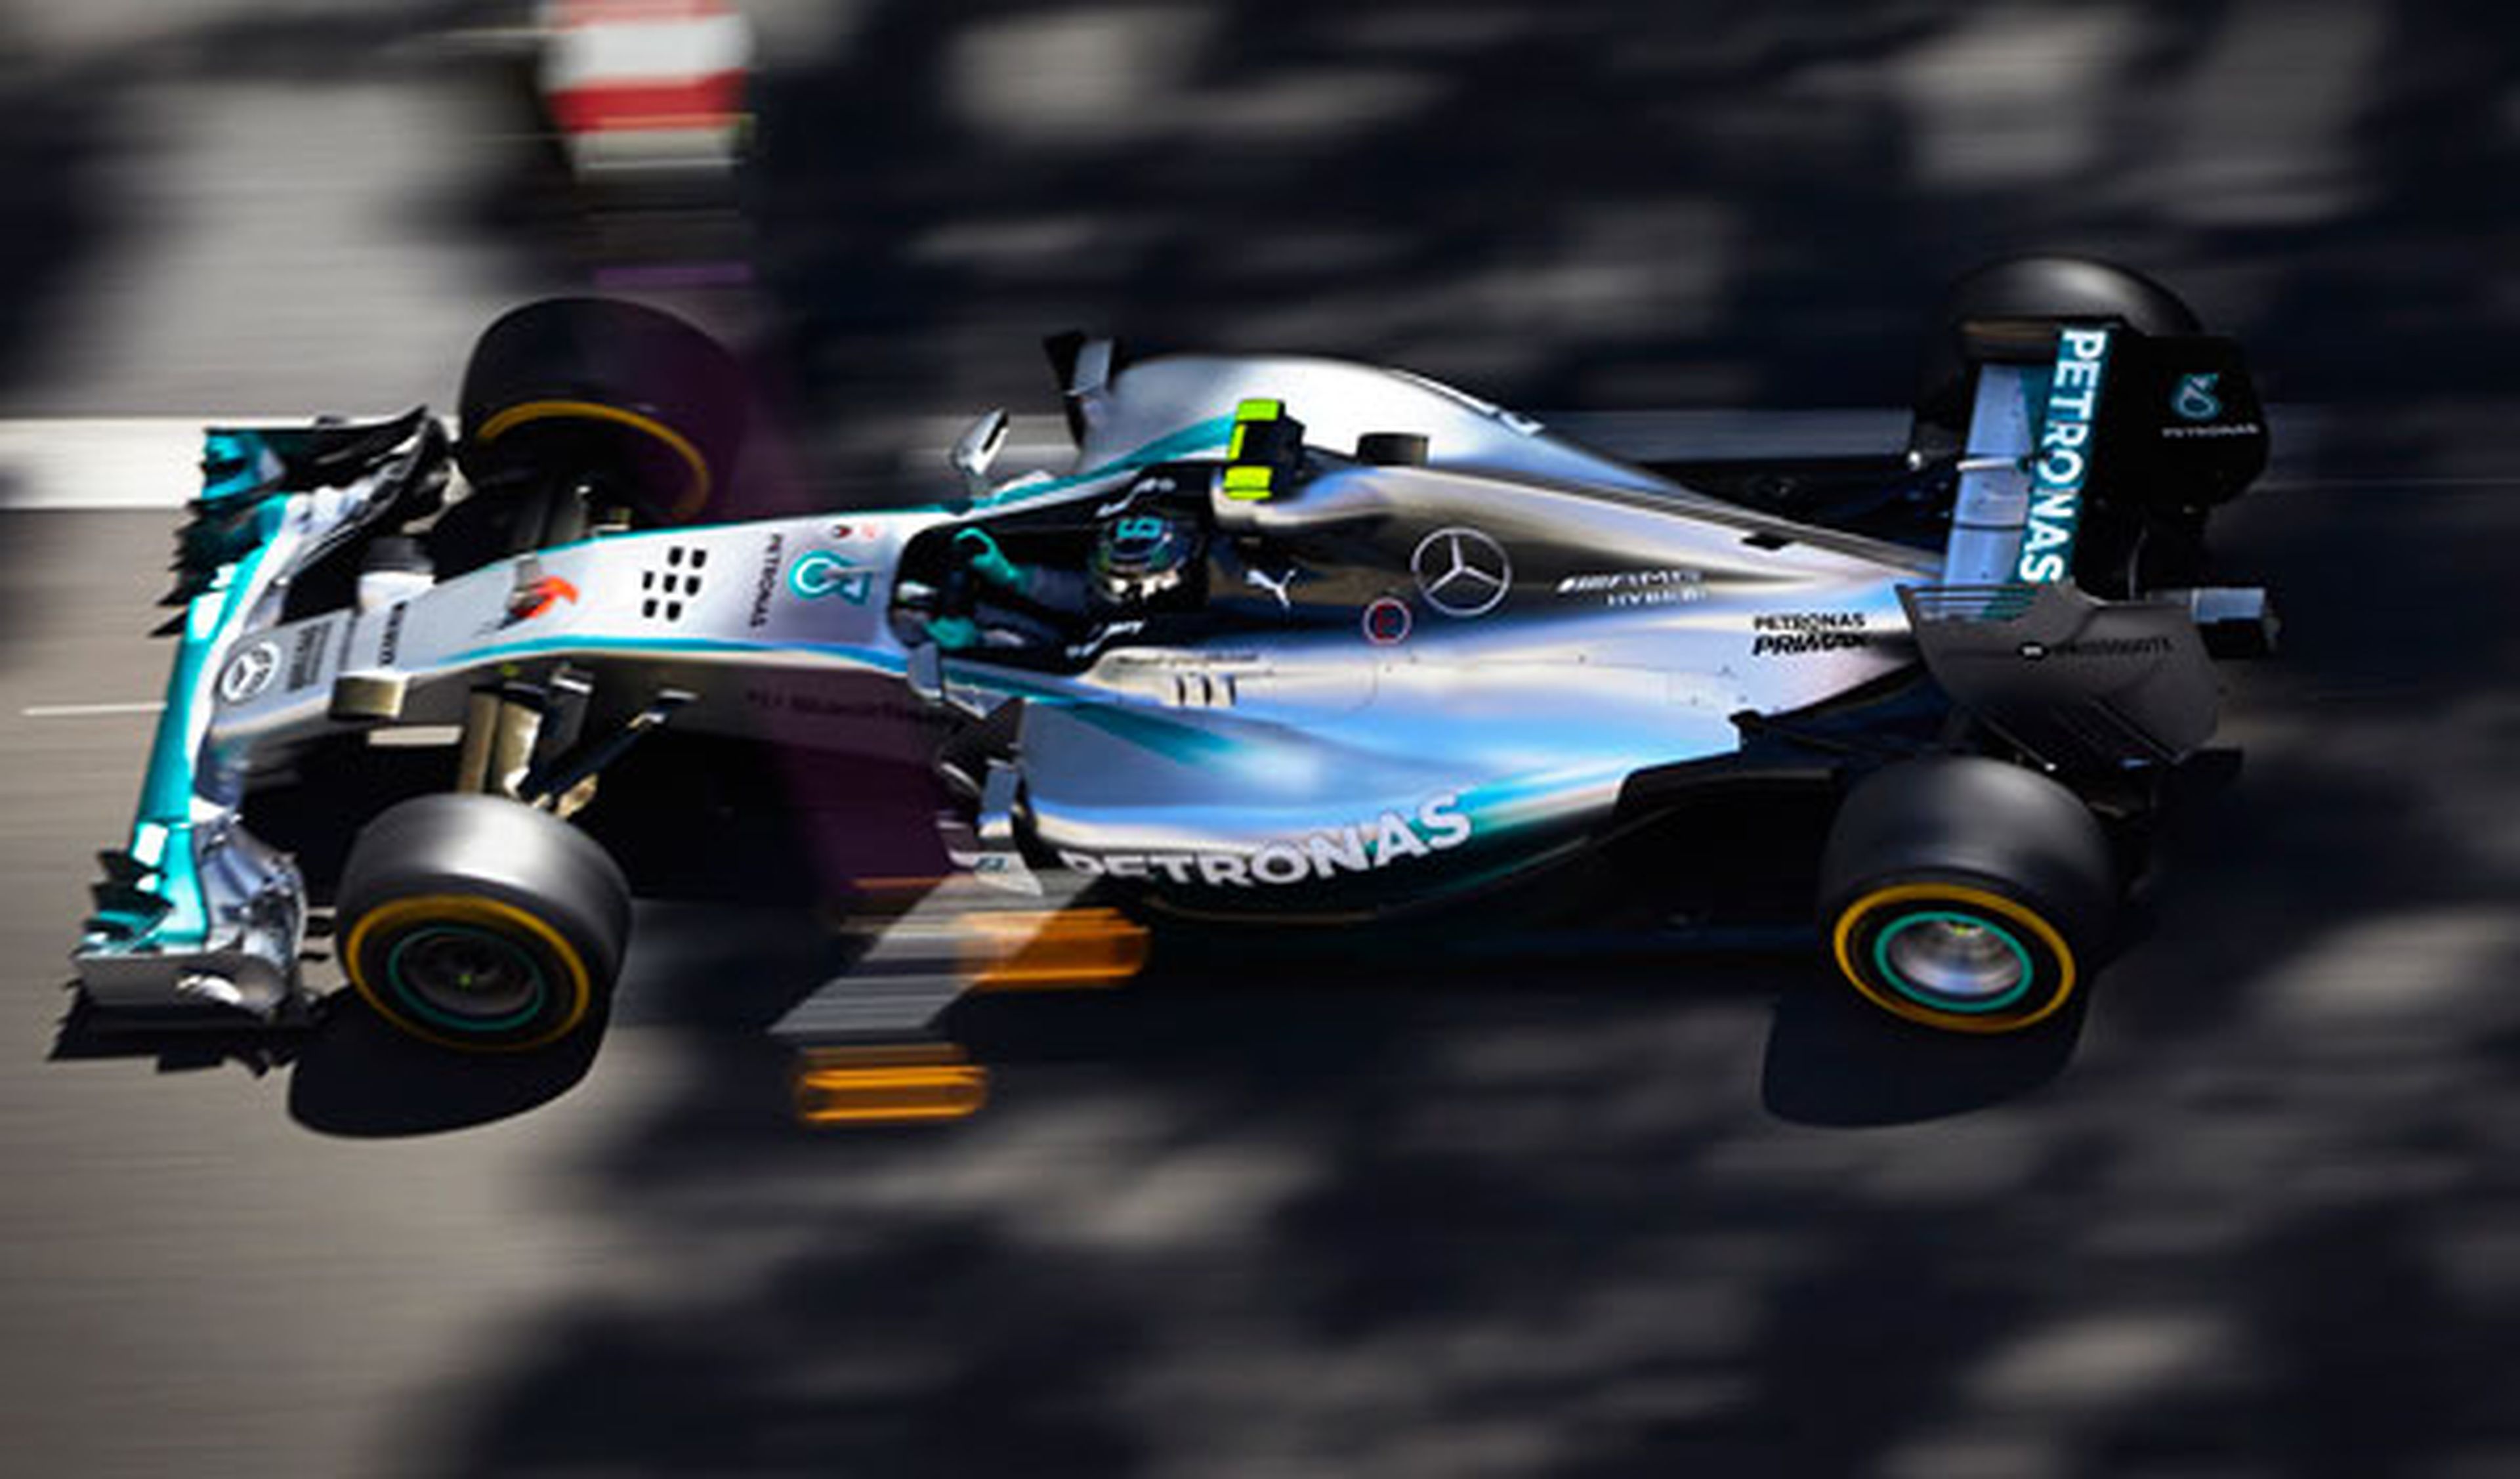 Fórmula 1: Resumen GP Mónaco 2014. Rosberg gana y es líder